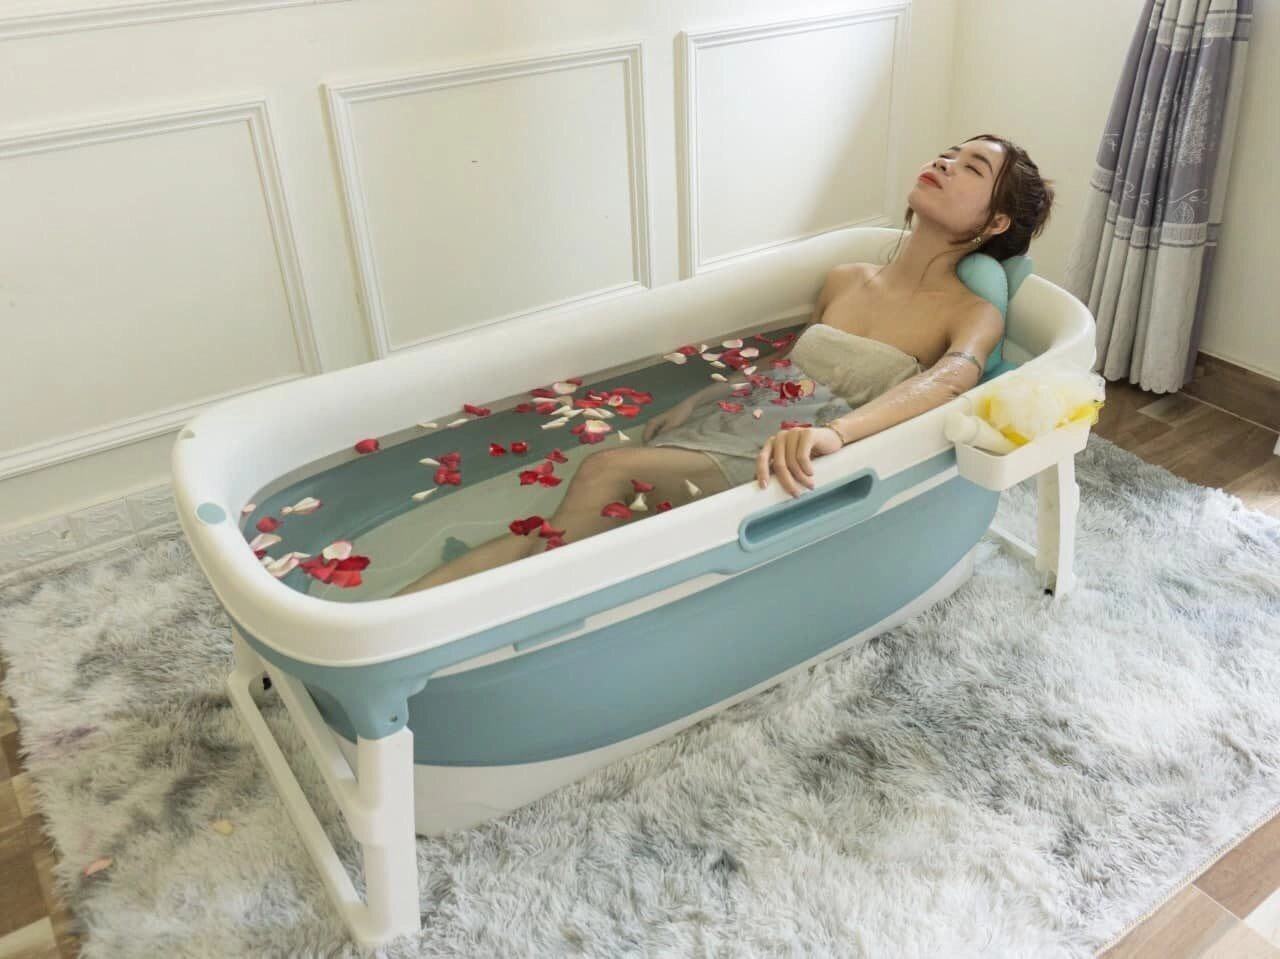 6 item giá hời giúp phòng tắm chill như ở spa chỉ từ 35000 đồng - 1